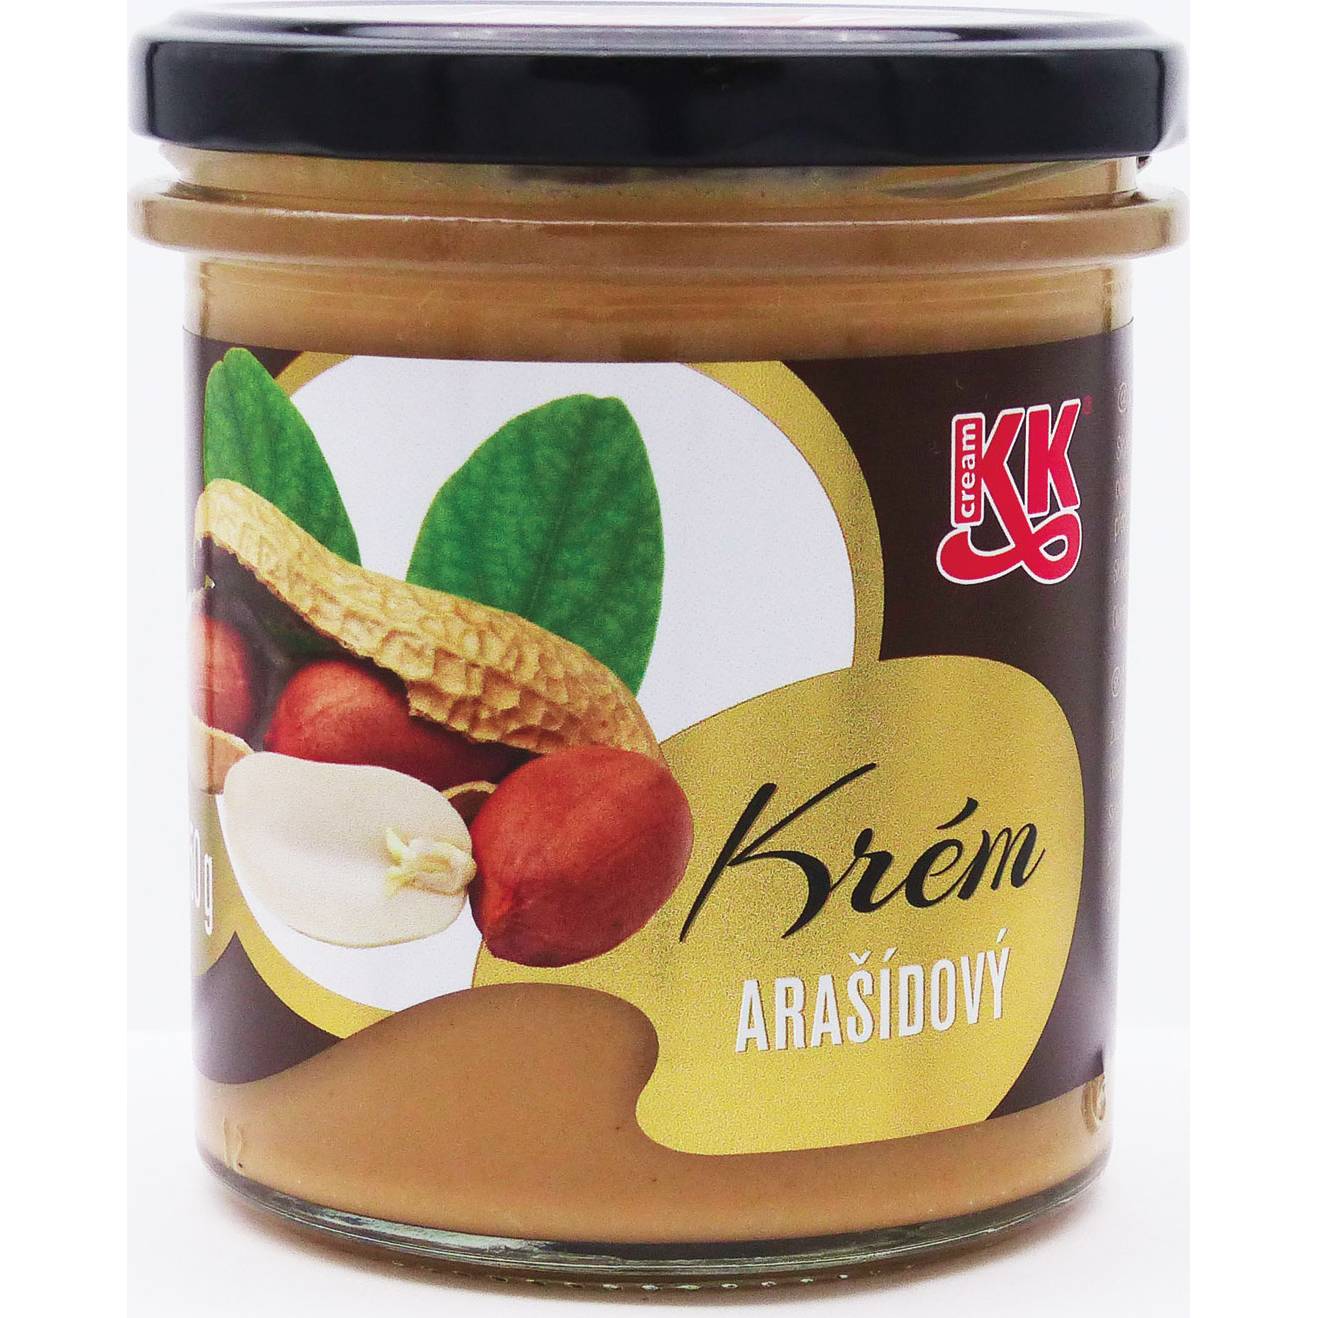 Arašídový krém - máslo 80% 350 g KK